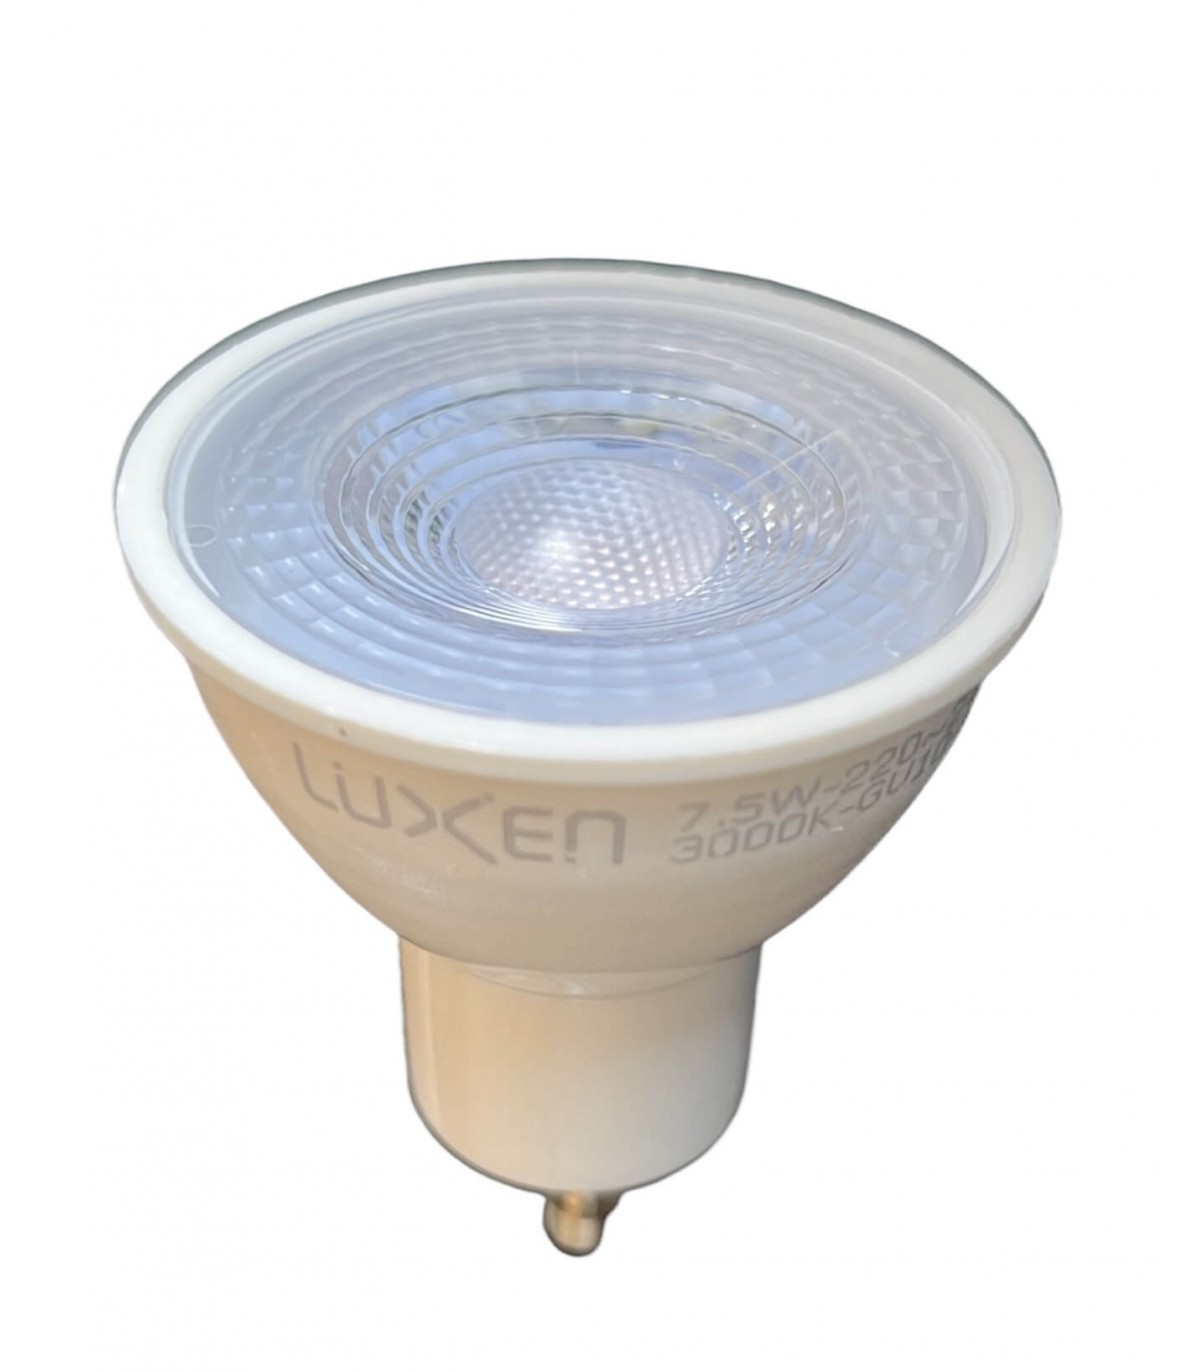 Ampoule LED spot avec culot sandard GU10, conso. 6W